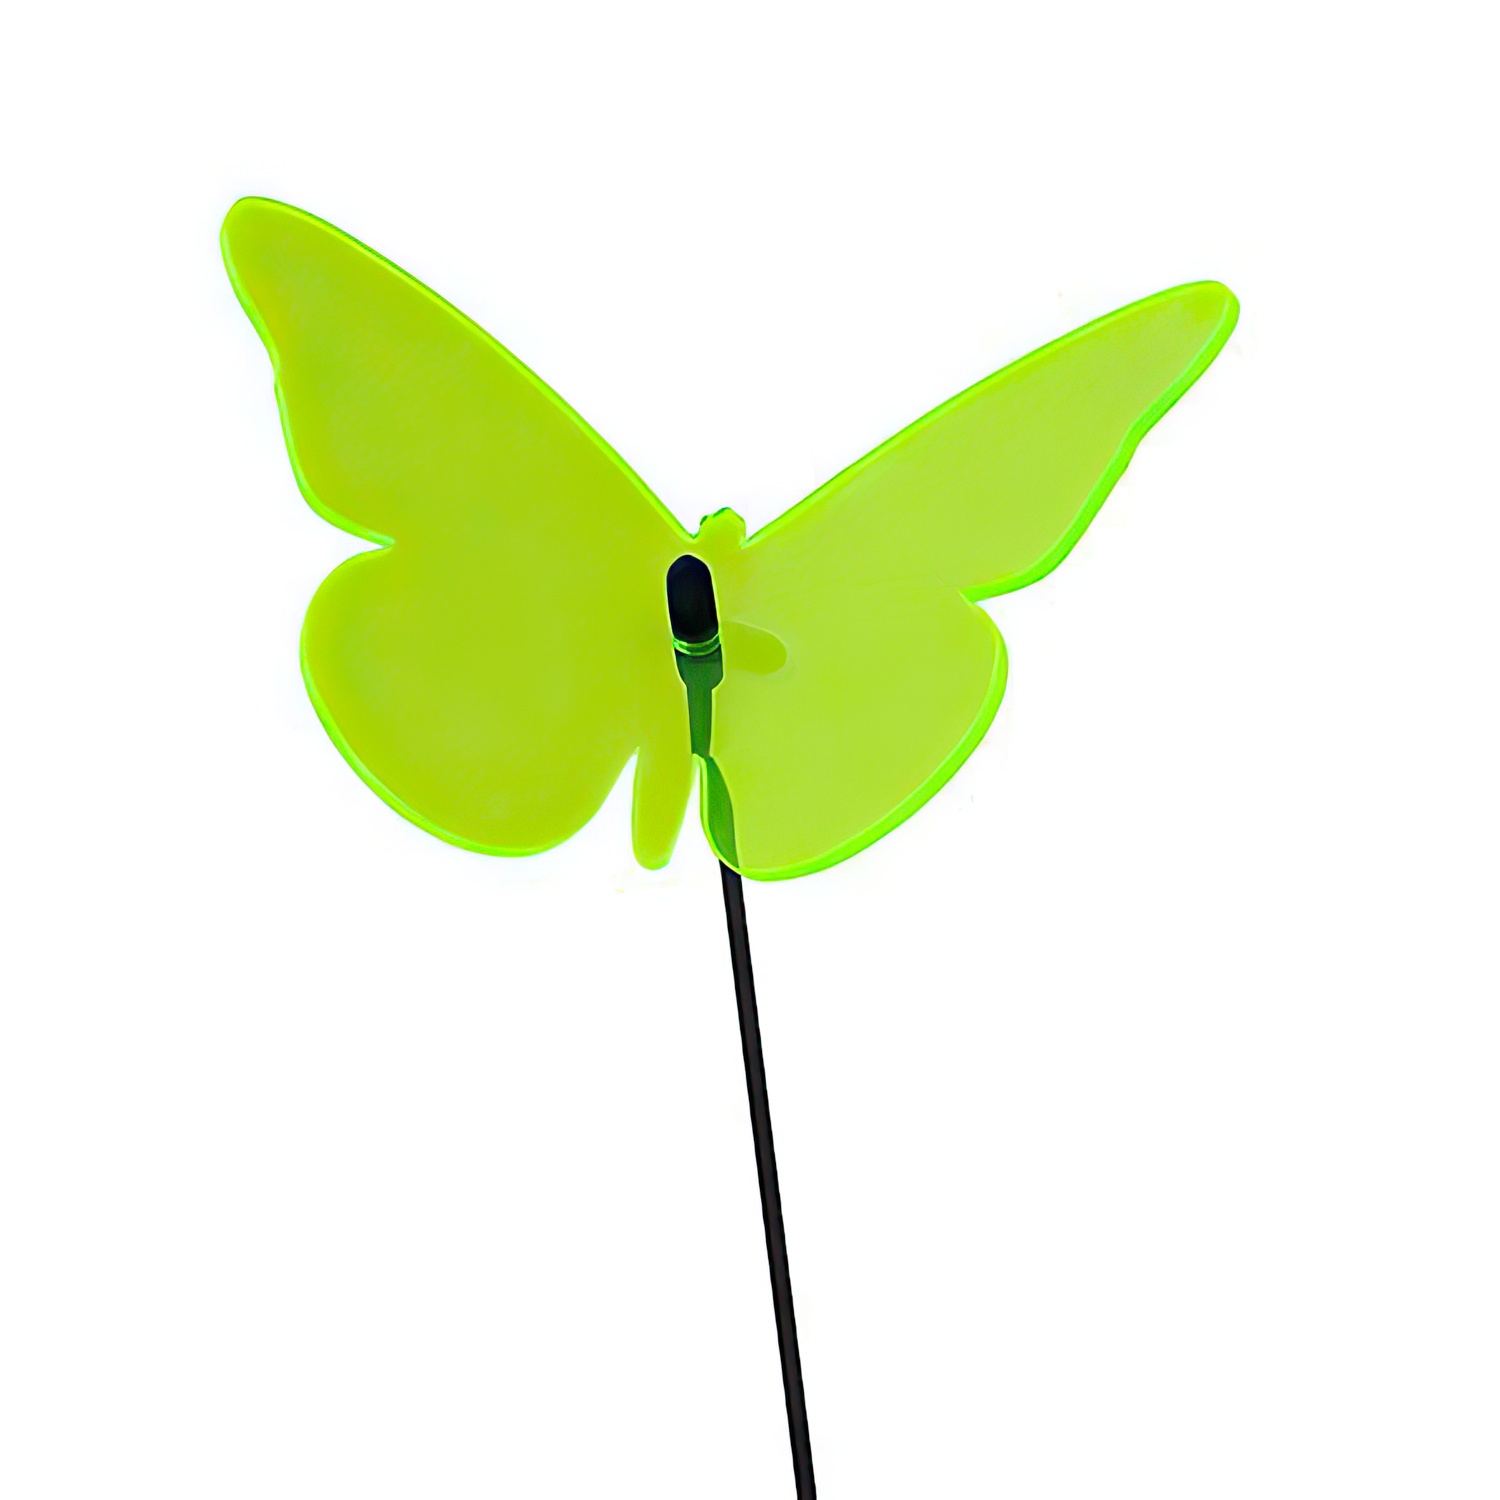 Elliot Lichtzauber - Sonnenfänger 1019450  Schmetterling mittel 16 cm gebogen grün